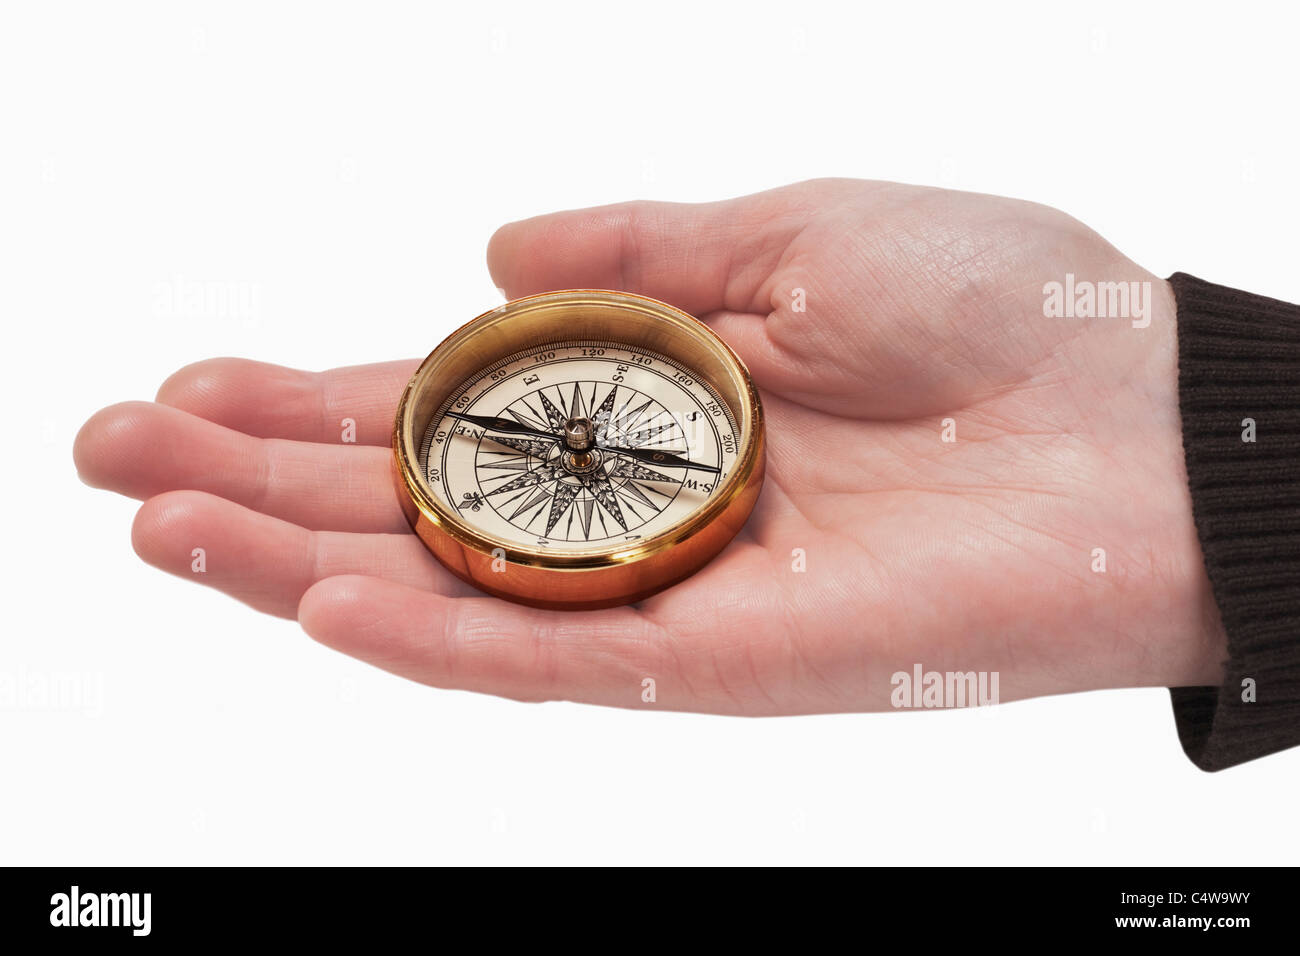 ein Kompass wird in der Hand gehalten | a compass is hand-held Stock Photo